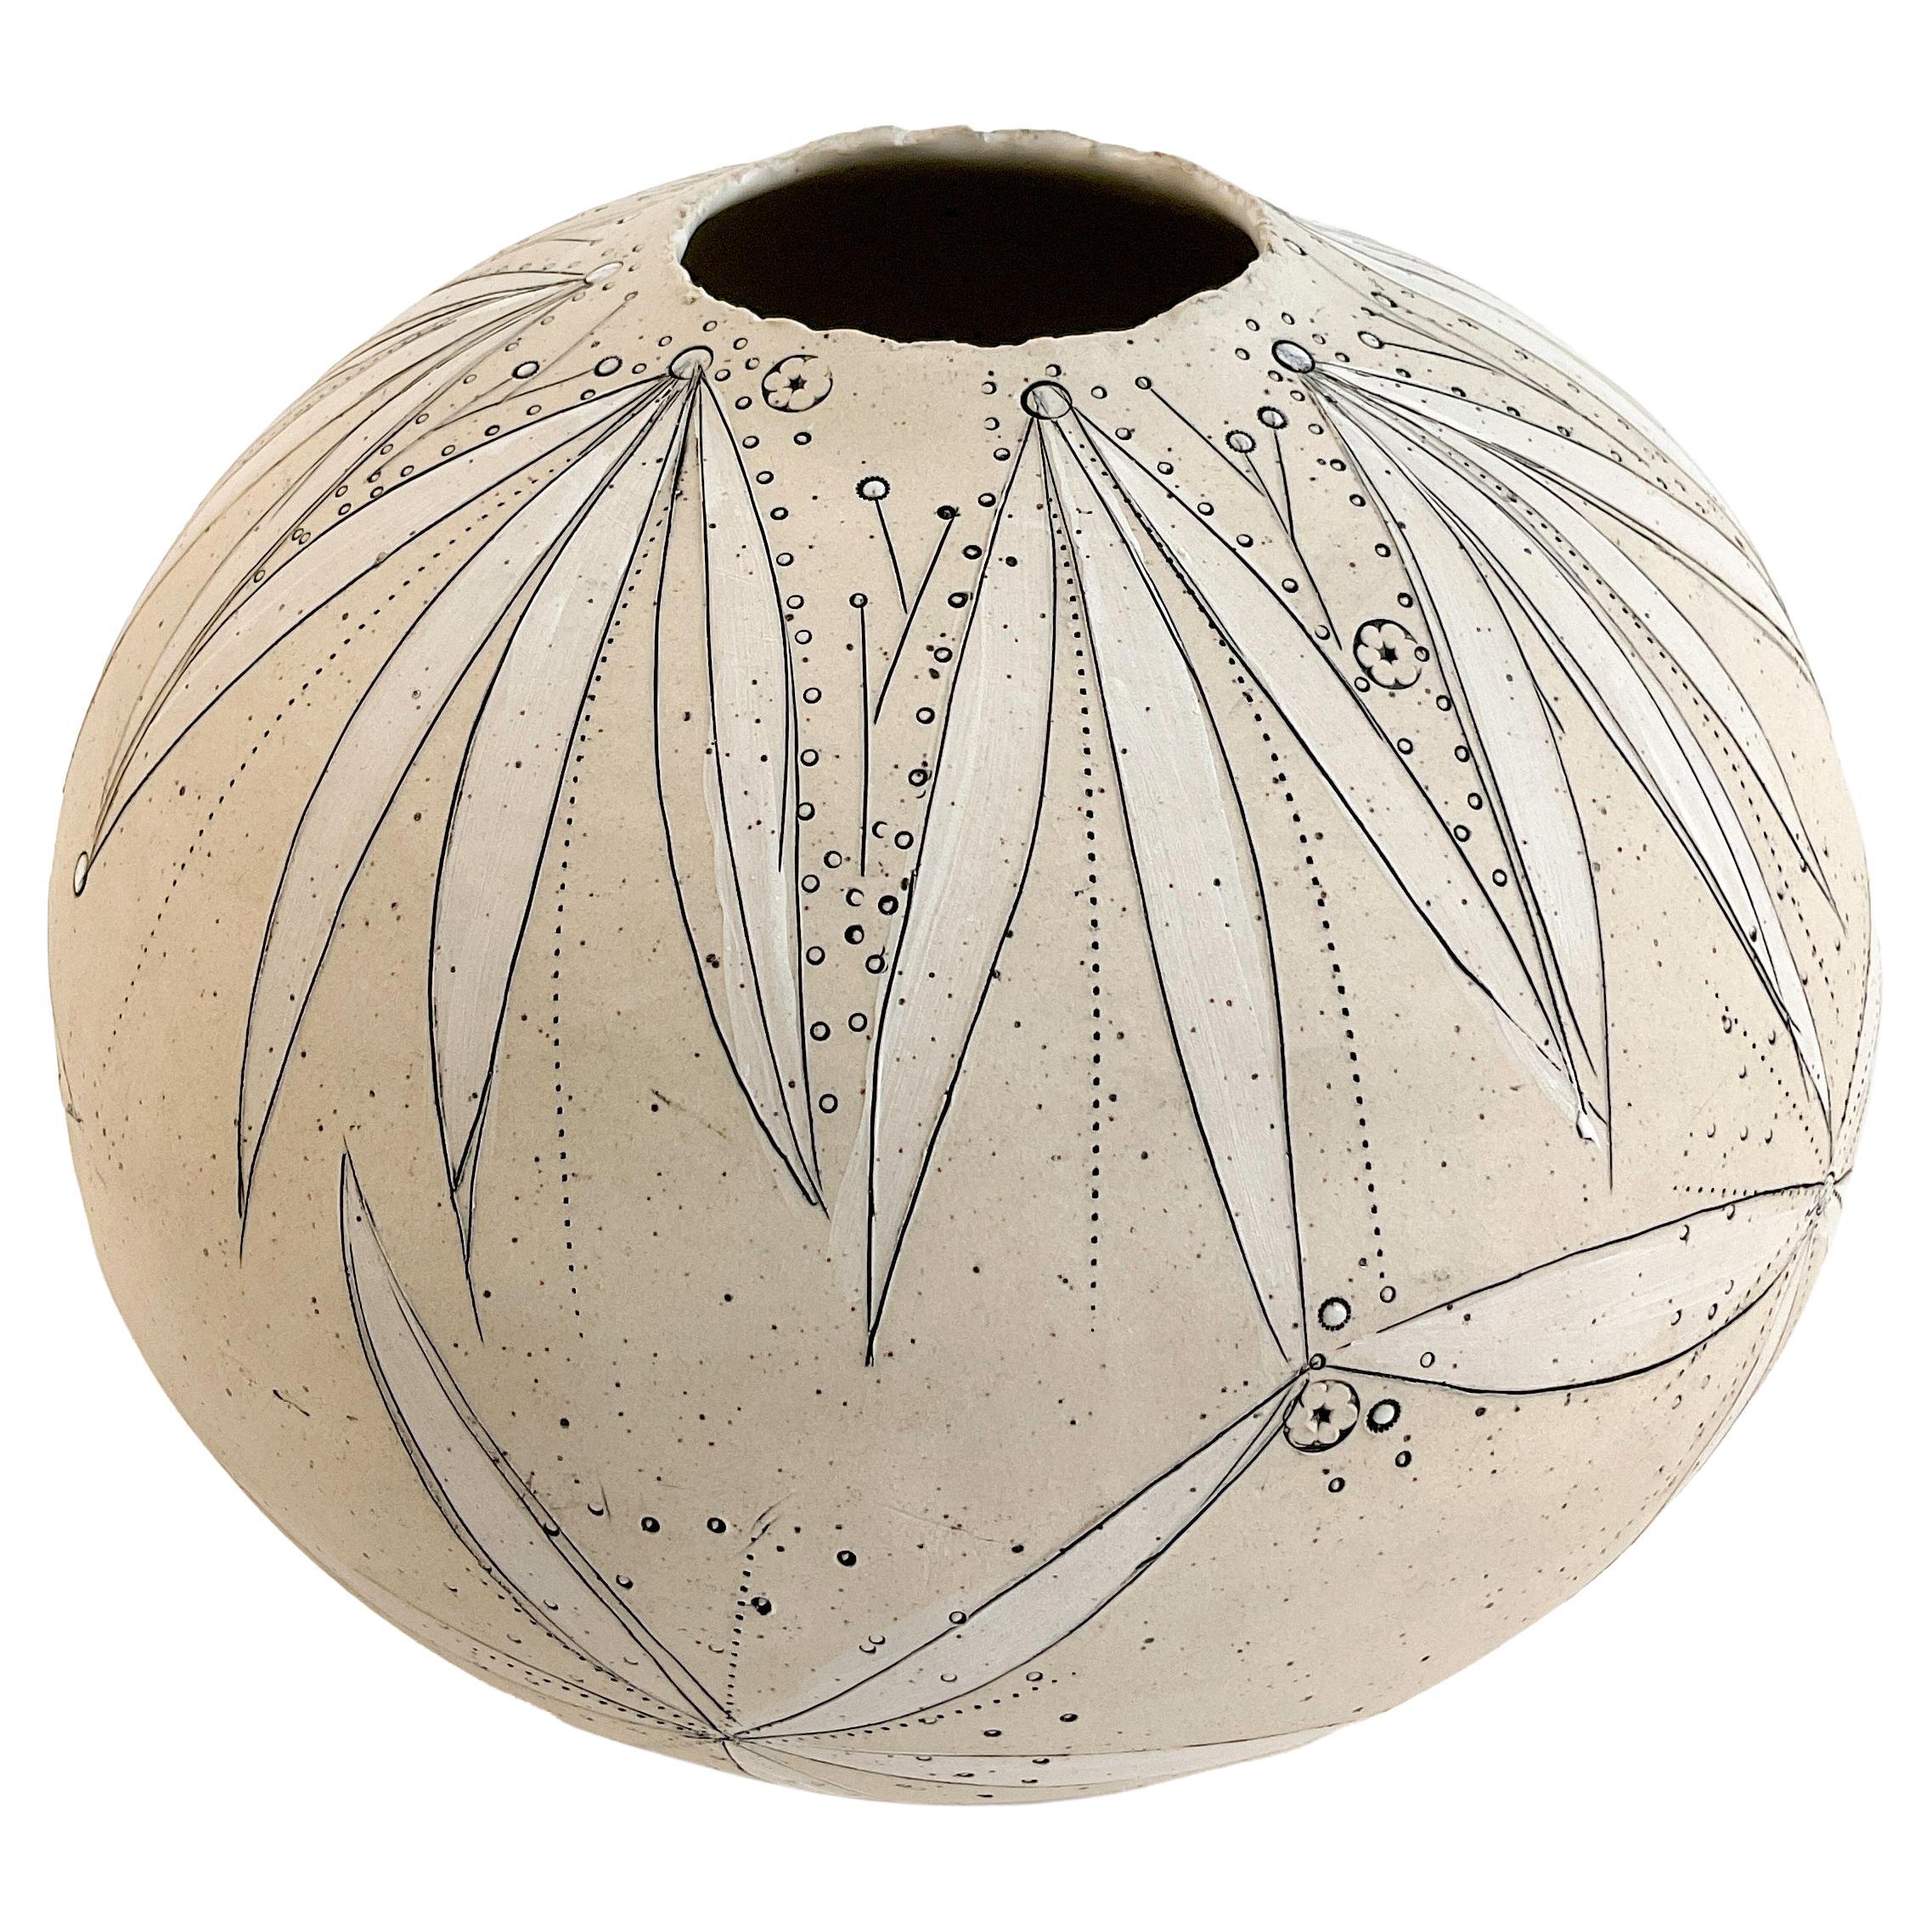 477 Handgefertigte mundgefertigte mundgeblasene Mondvase aus Steingut von Helen Prior